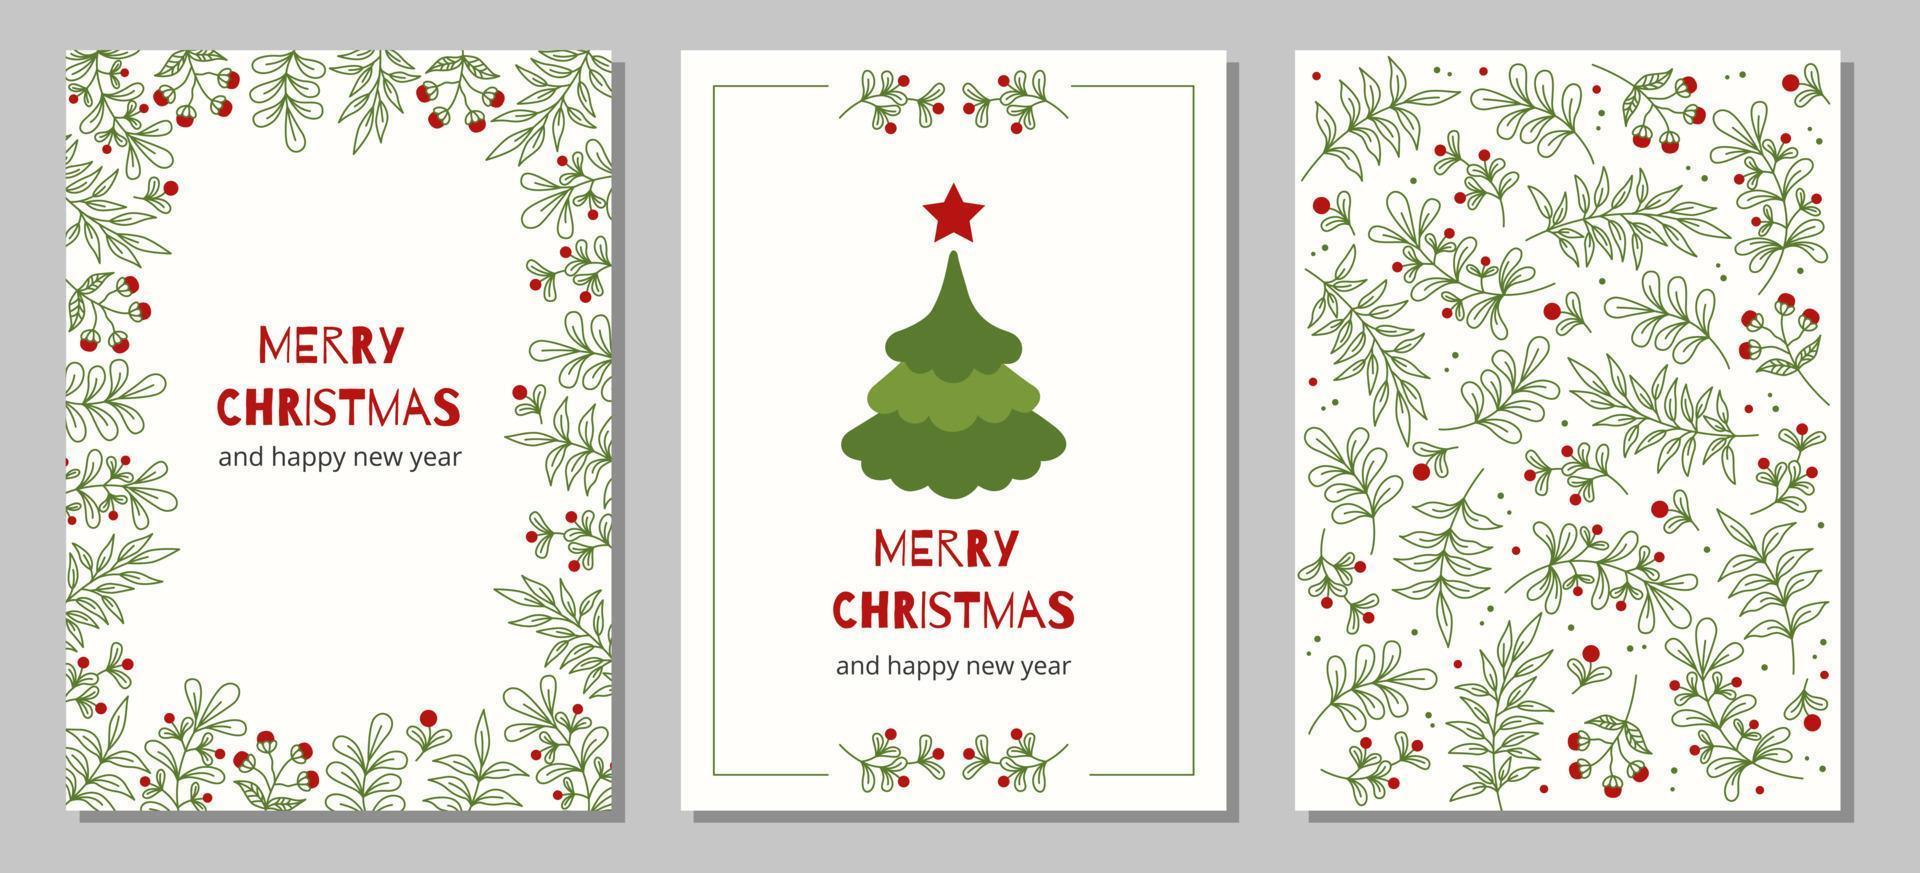 conjunto de tarjetas de felicitación de navidad y feliz año nuevo con árbol de navidad, marcos florales y fondos. vector